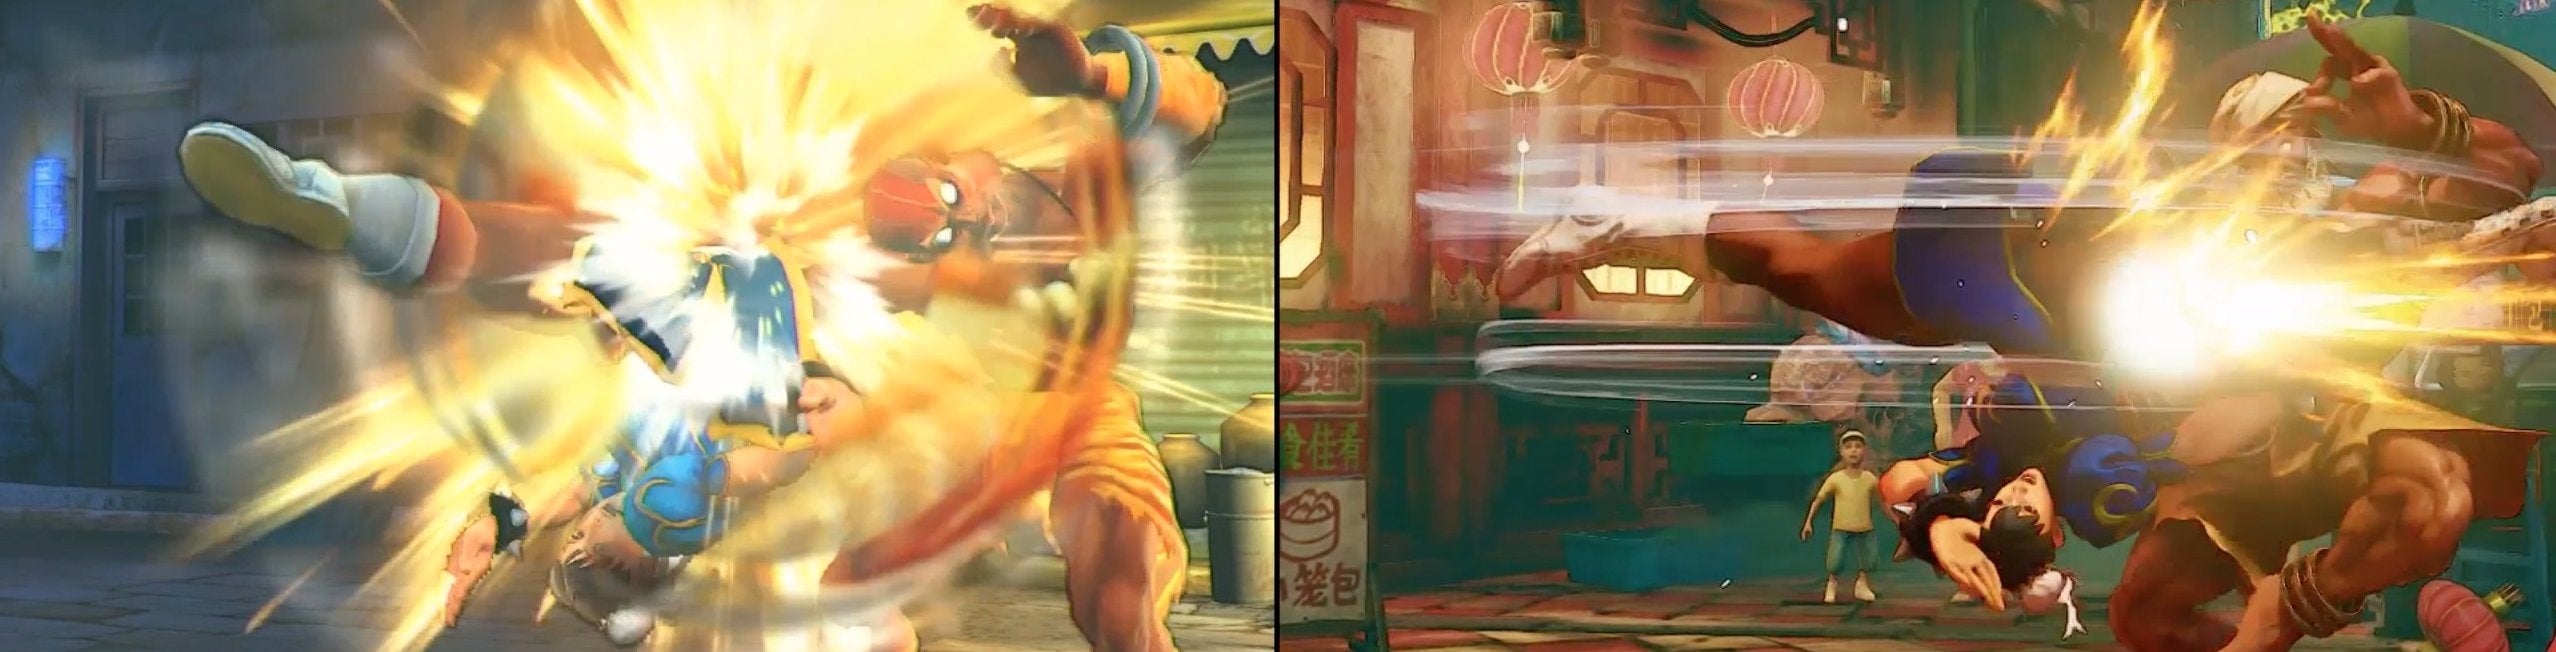 Immagine di Giochiamo in simultanea Street Fighter 4 e 5 - articolo